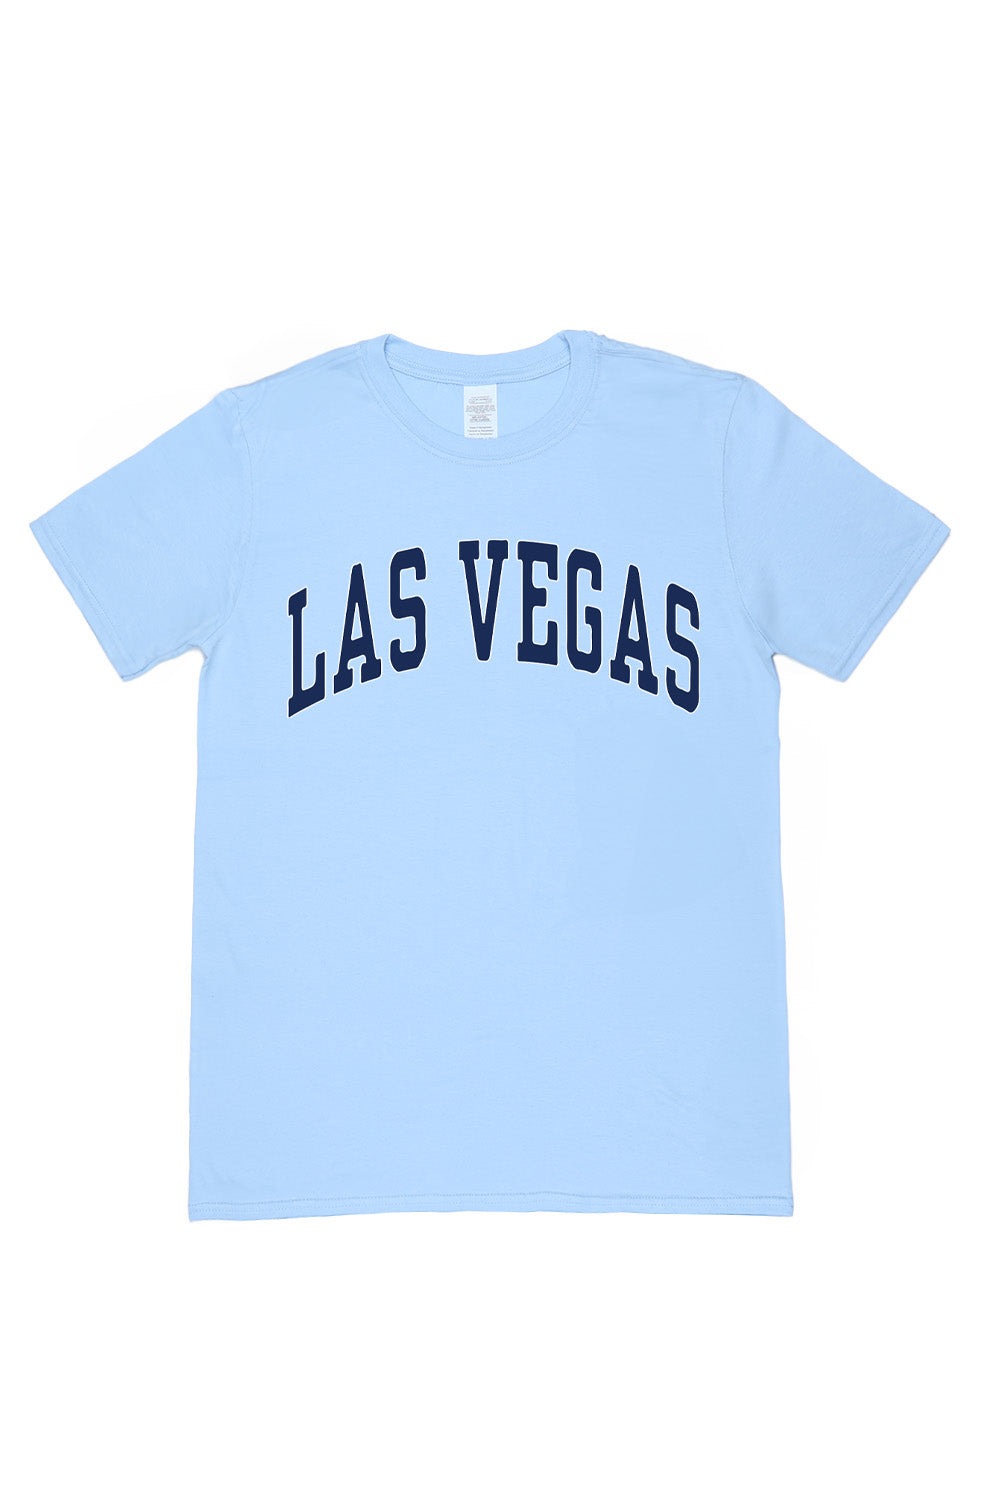 Las Vegas T-Shirt in Light Blue (Custom Packs)